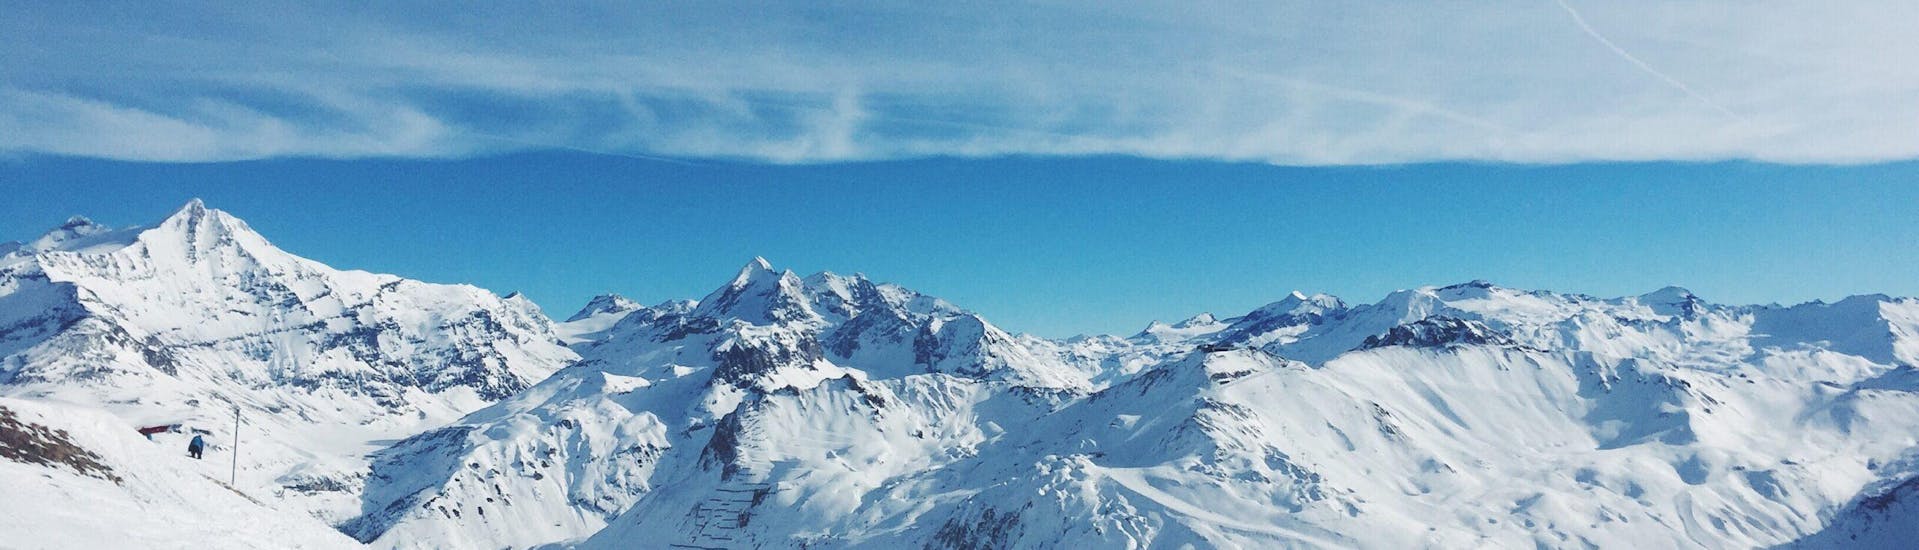 The view during the ski and snowboard lessons with Scuola Italiana Sci Folgaria - Serrada in the region of Trentino-Alto Adige.